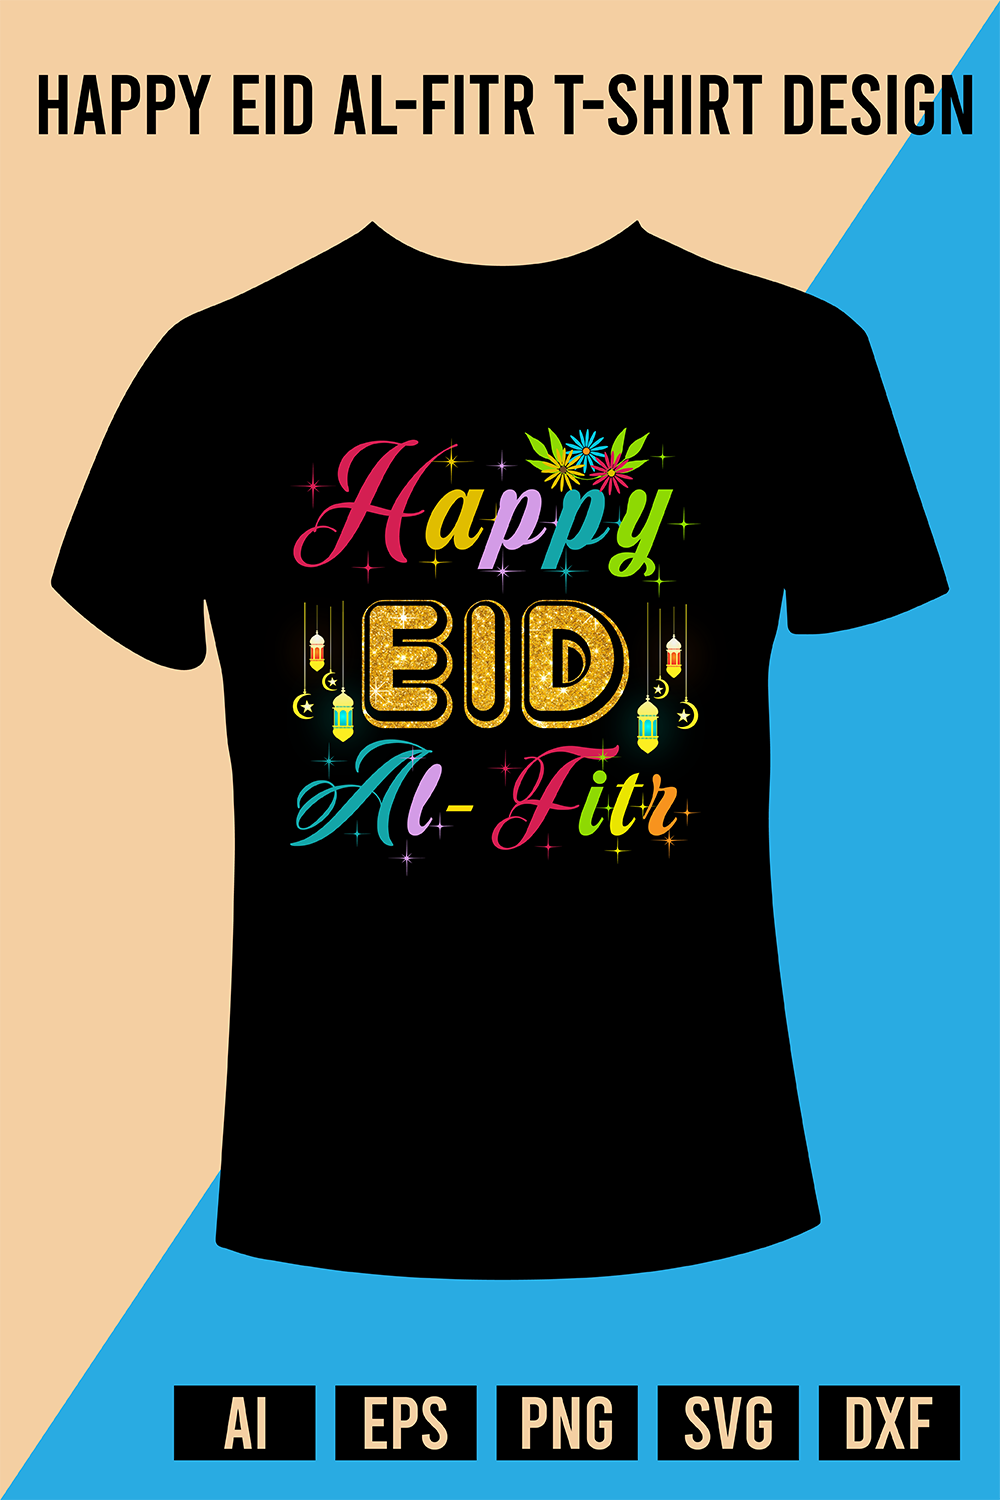 Happy Eid al-Fitr T-Shirt Design pinterest preview image.